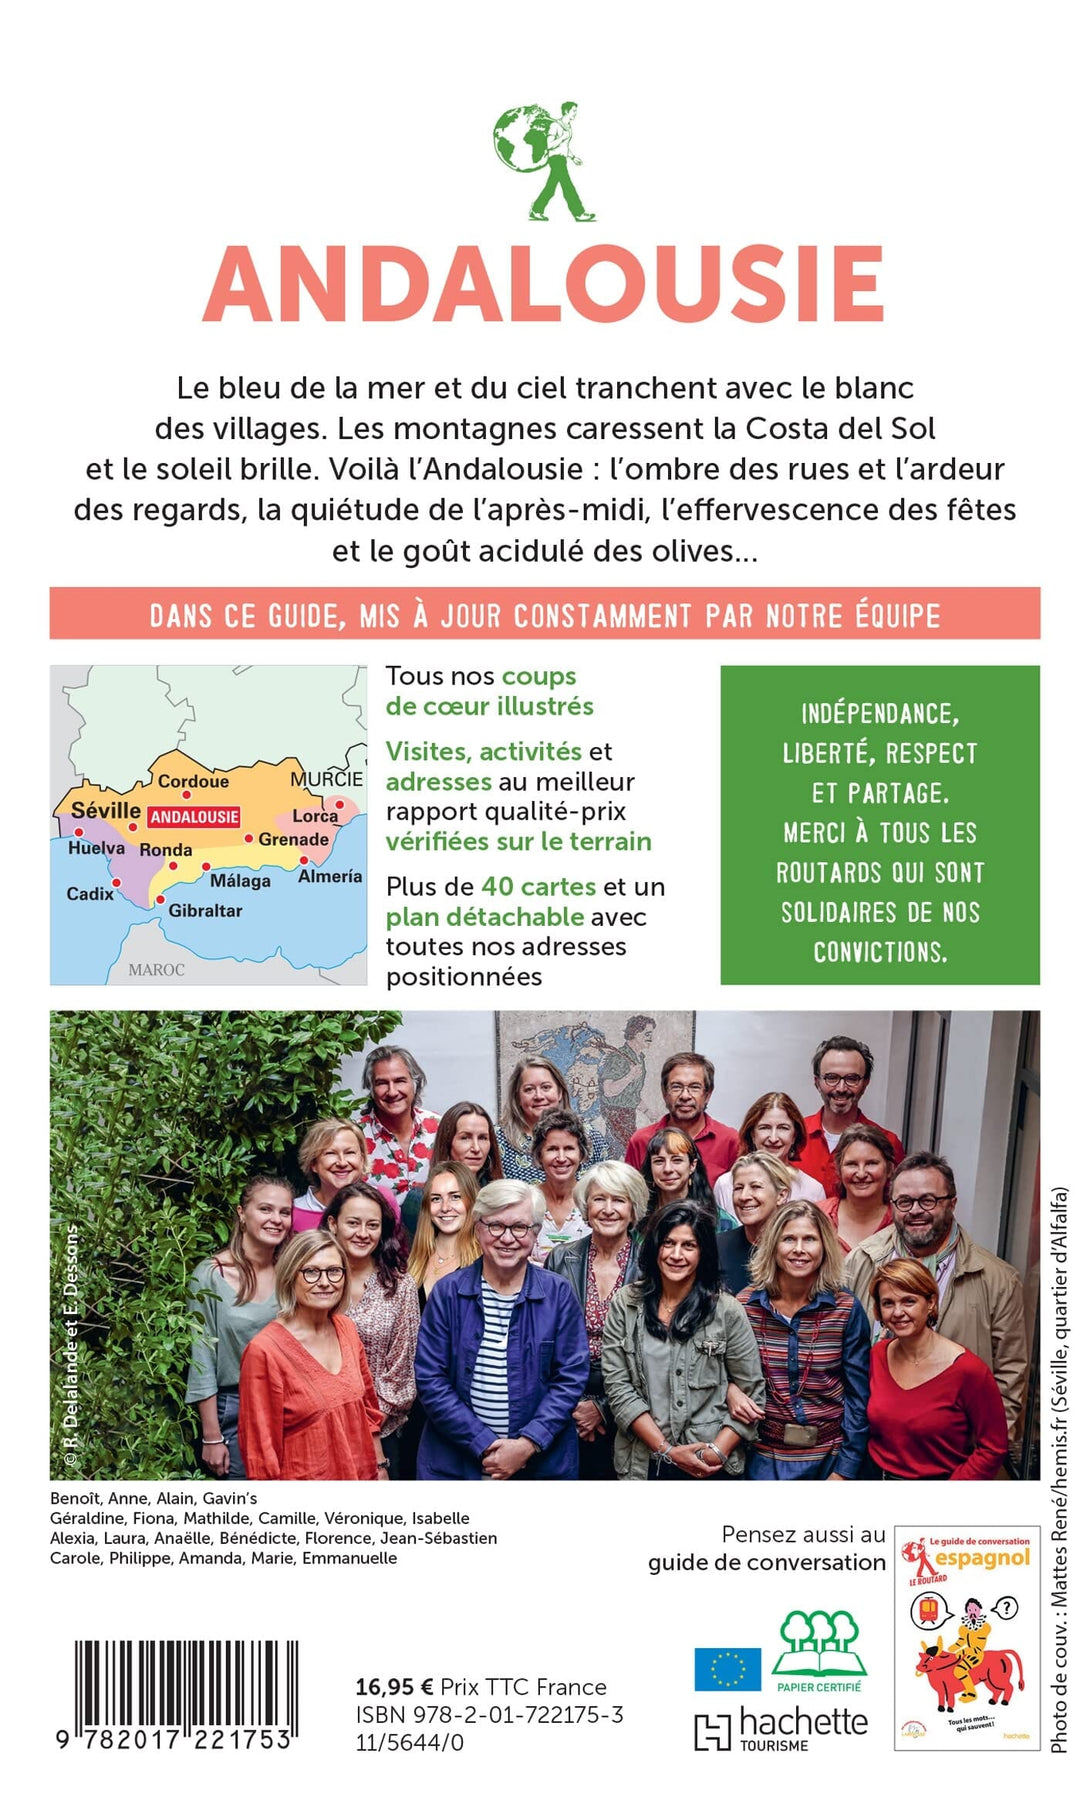 Guide du Routard - Andalousie 2023/24 | Hachette guide de voyage Hachette 